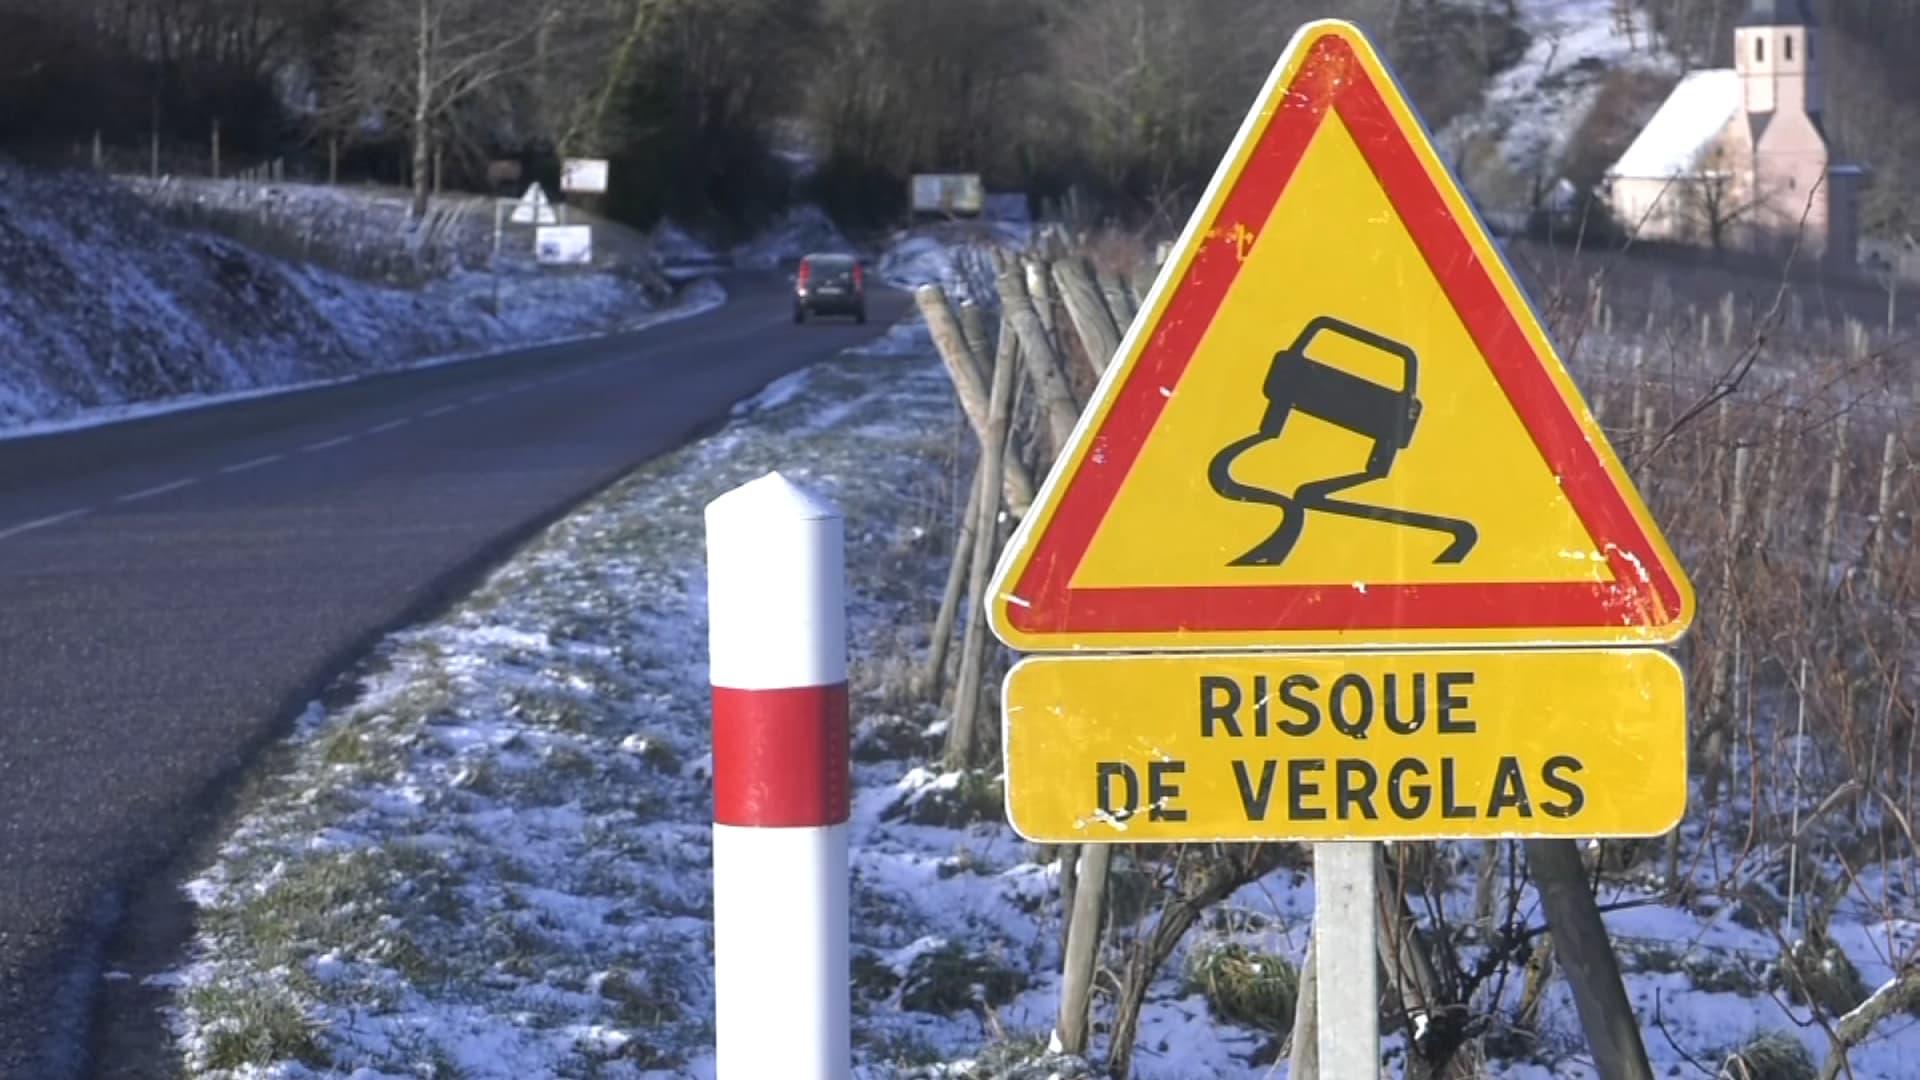 île-de-france: après la neige, prudence face au risque de regel qui rend les sols très glissants